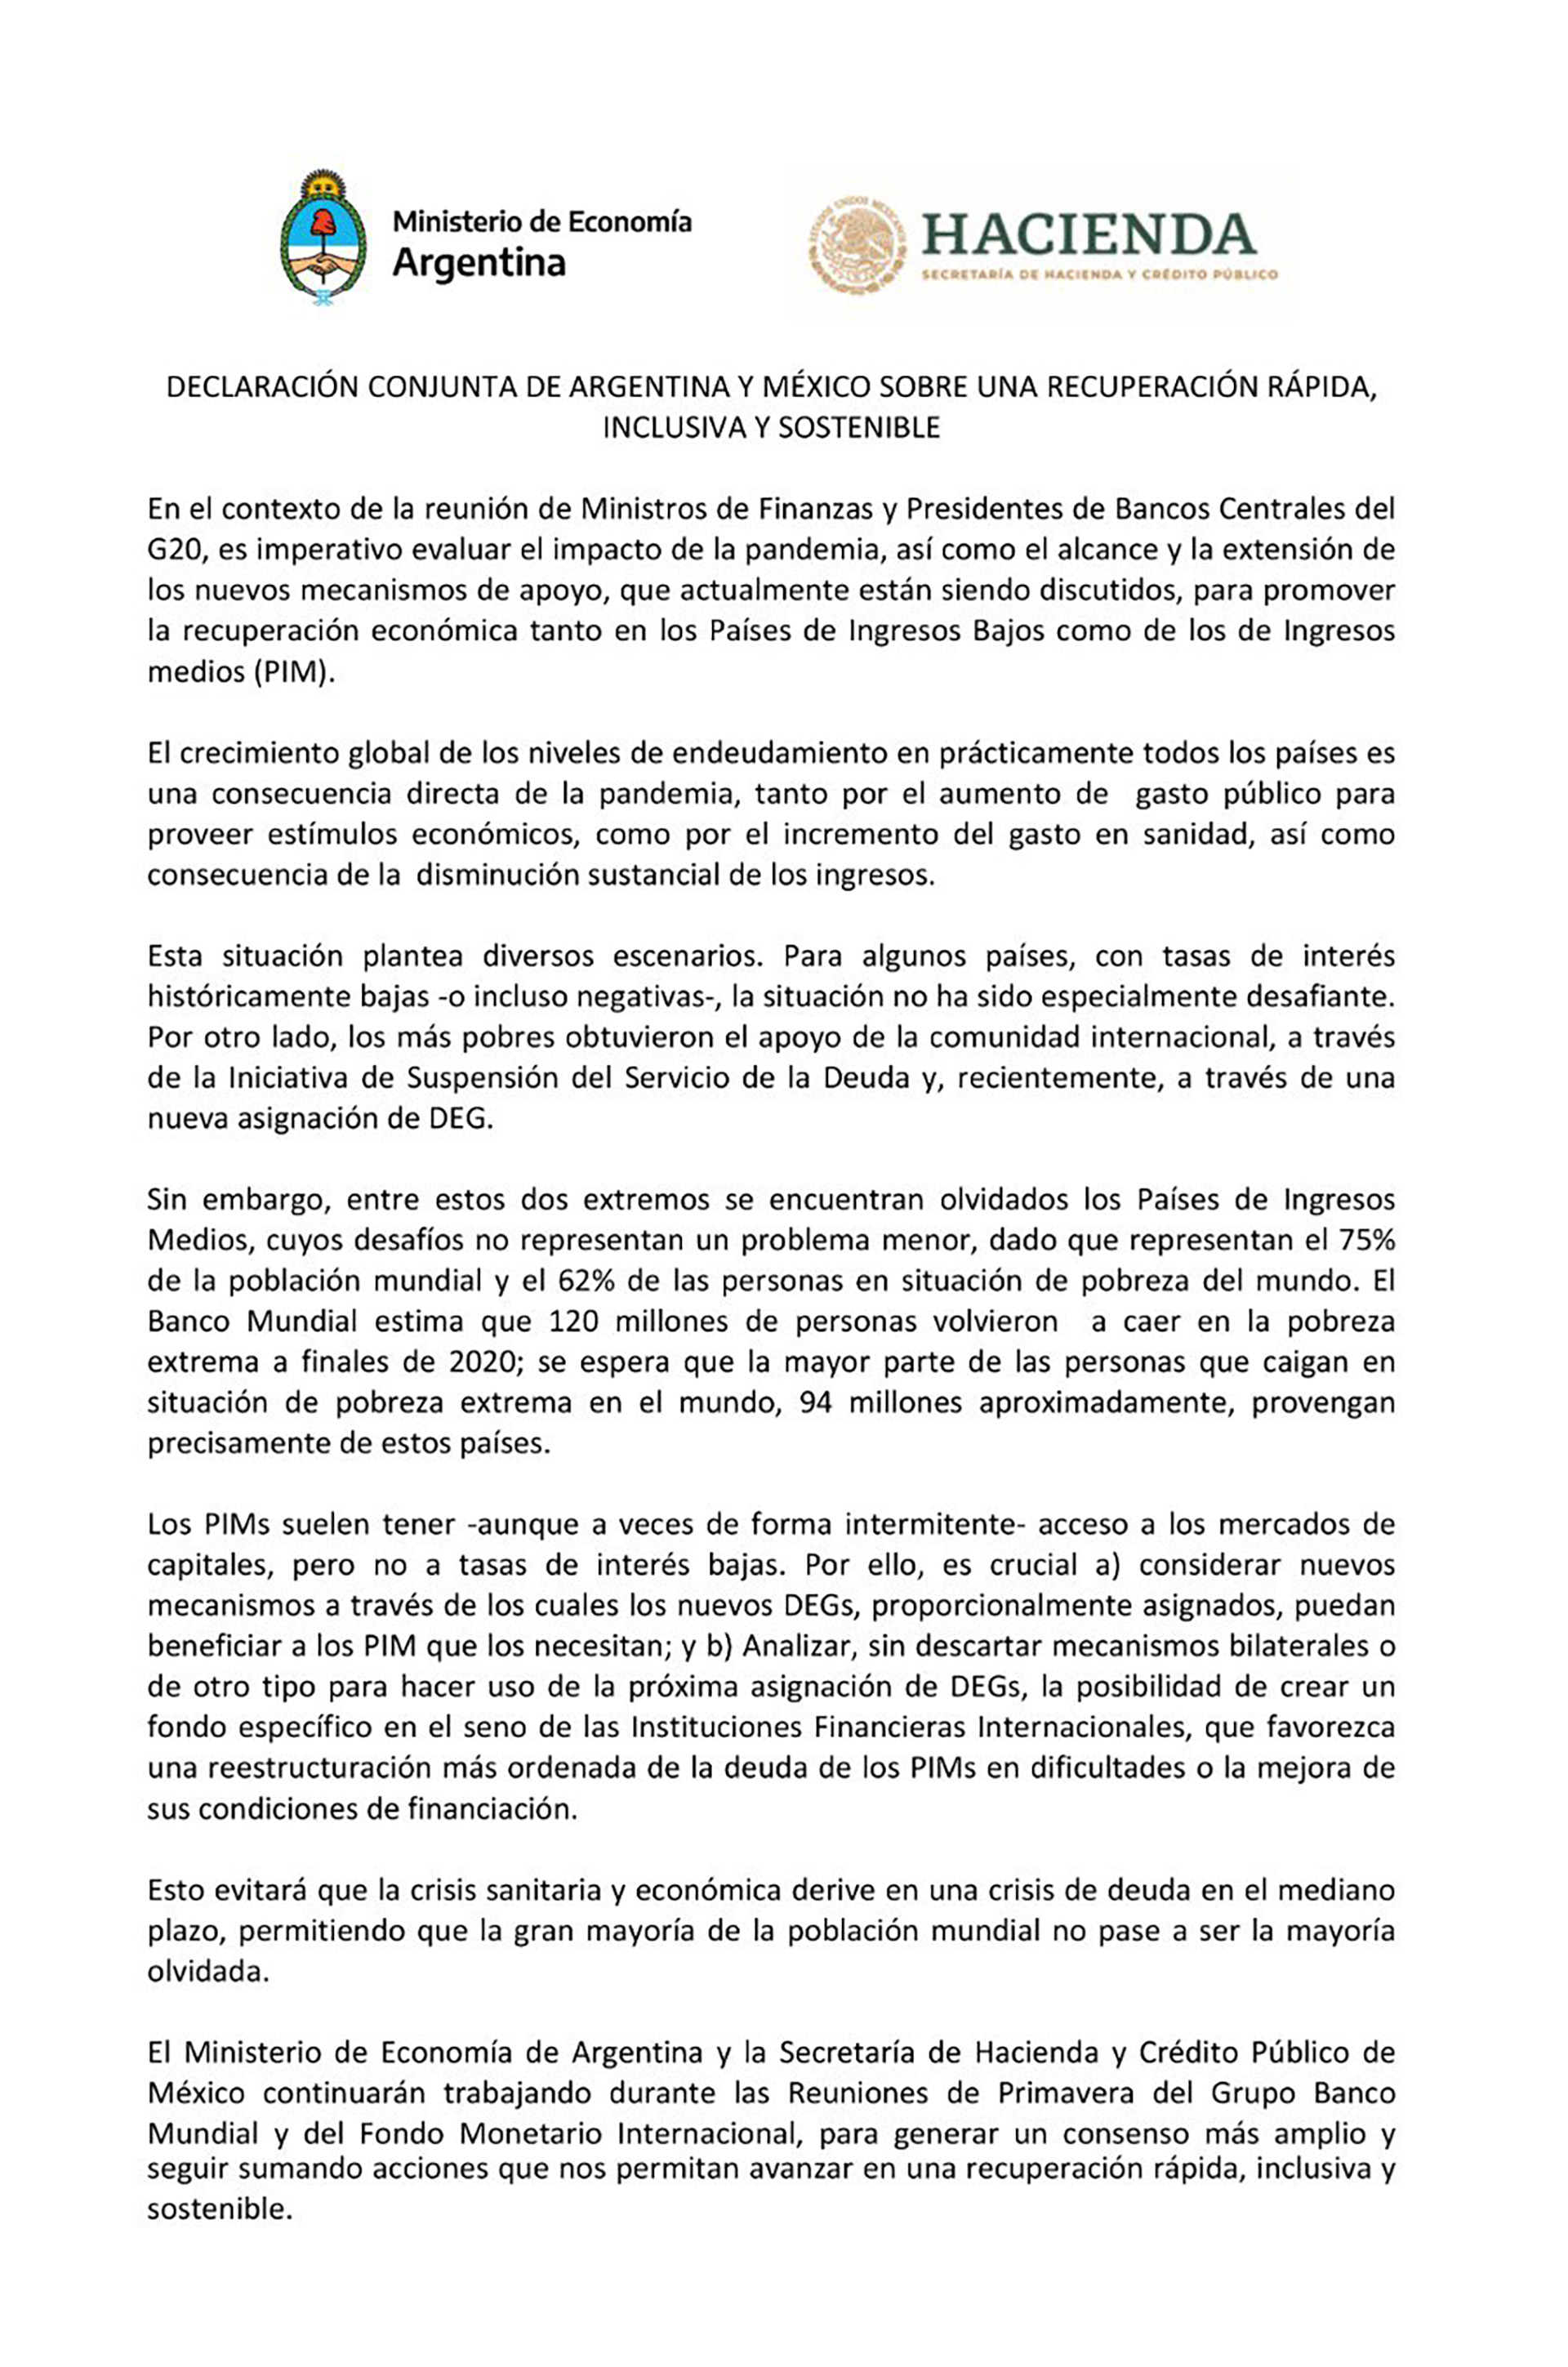 La declaración de Argentina y México